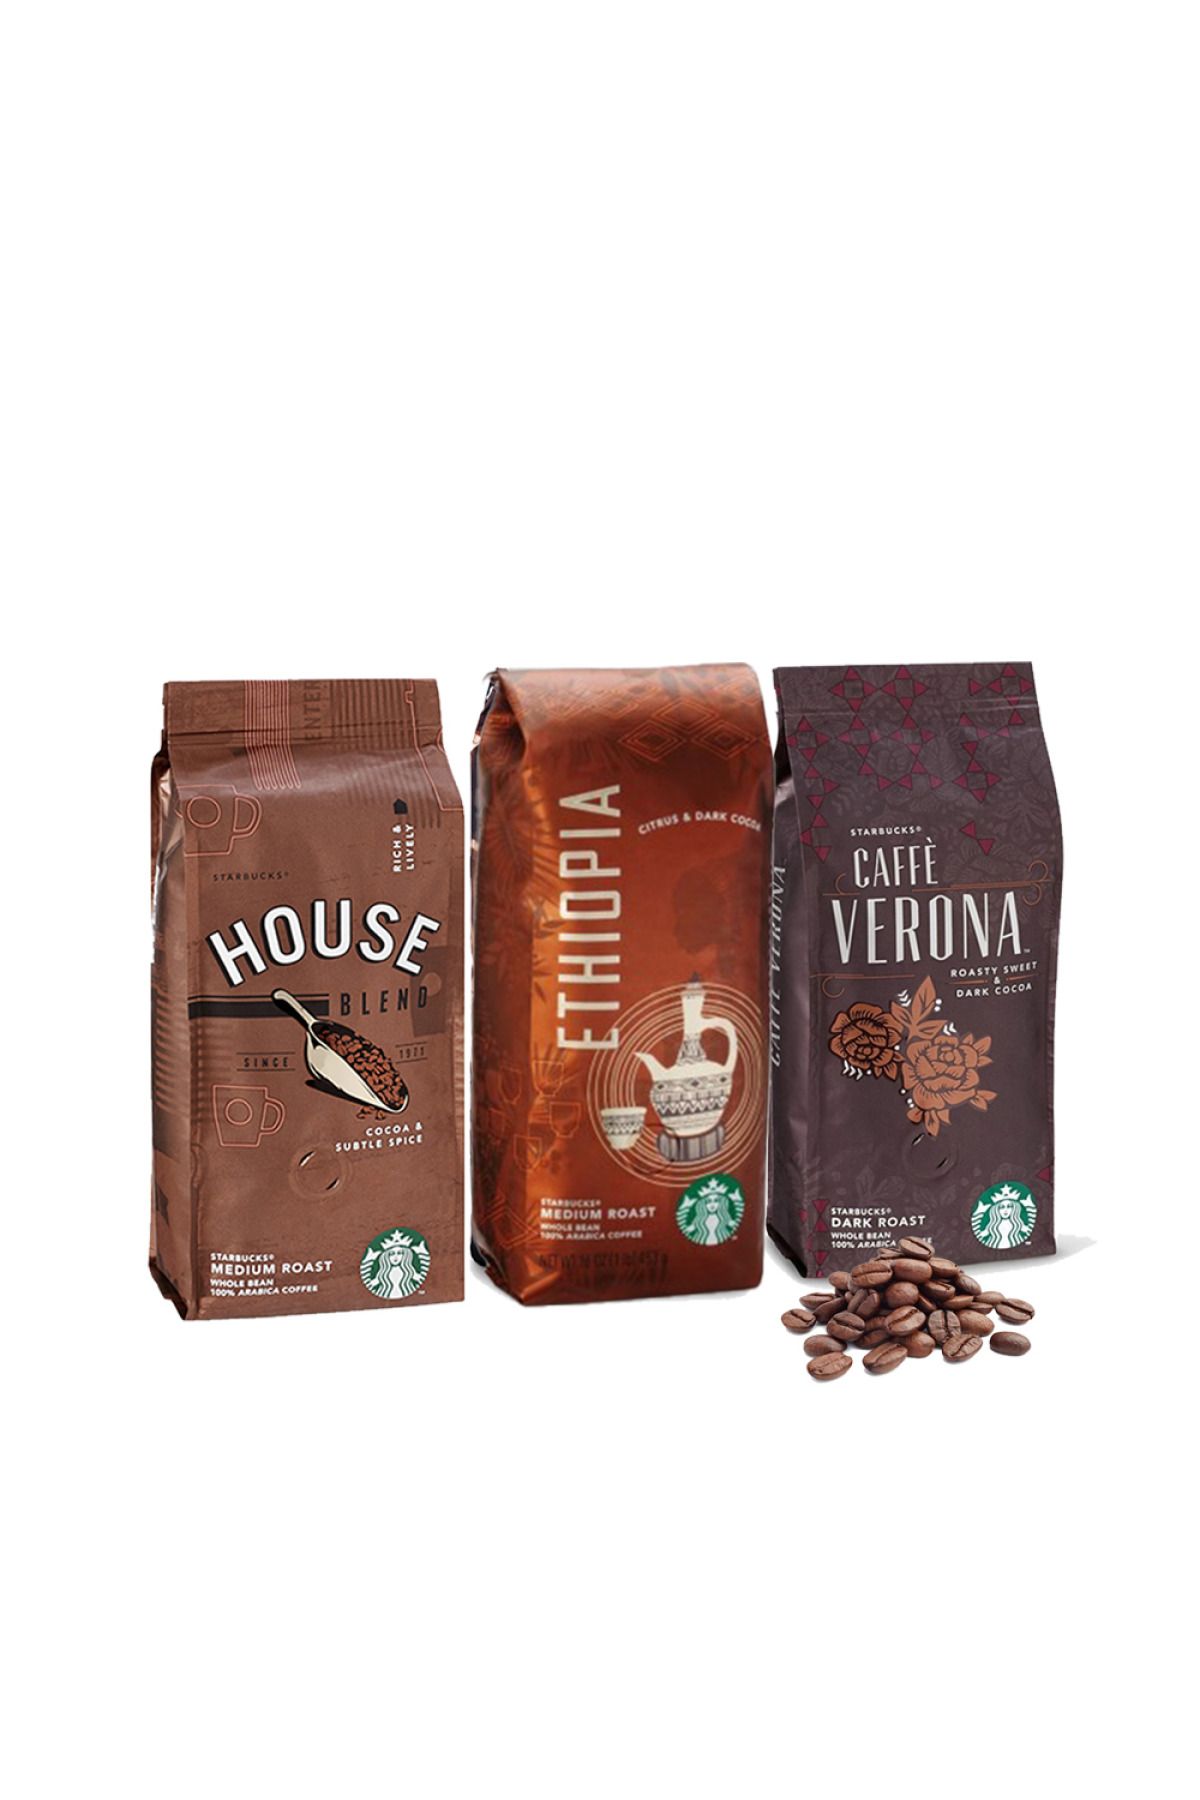 Starbucks Düvenci Toptan Verona, House Ve Ethiopia Çekirdek Kahve 250 Gramlık 3 Paket